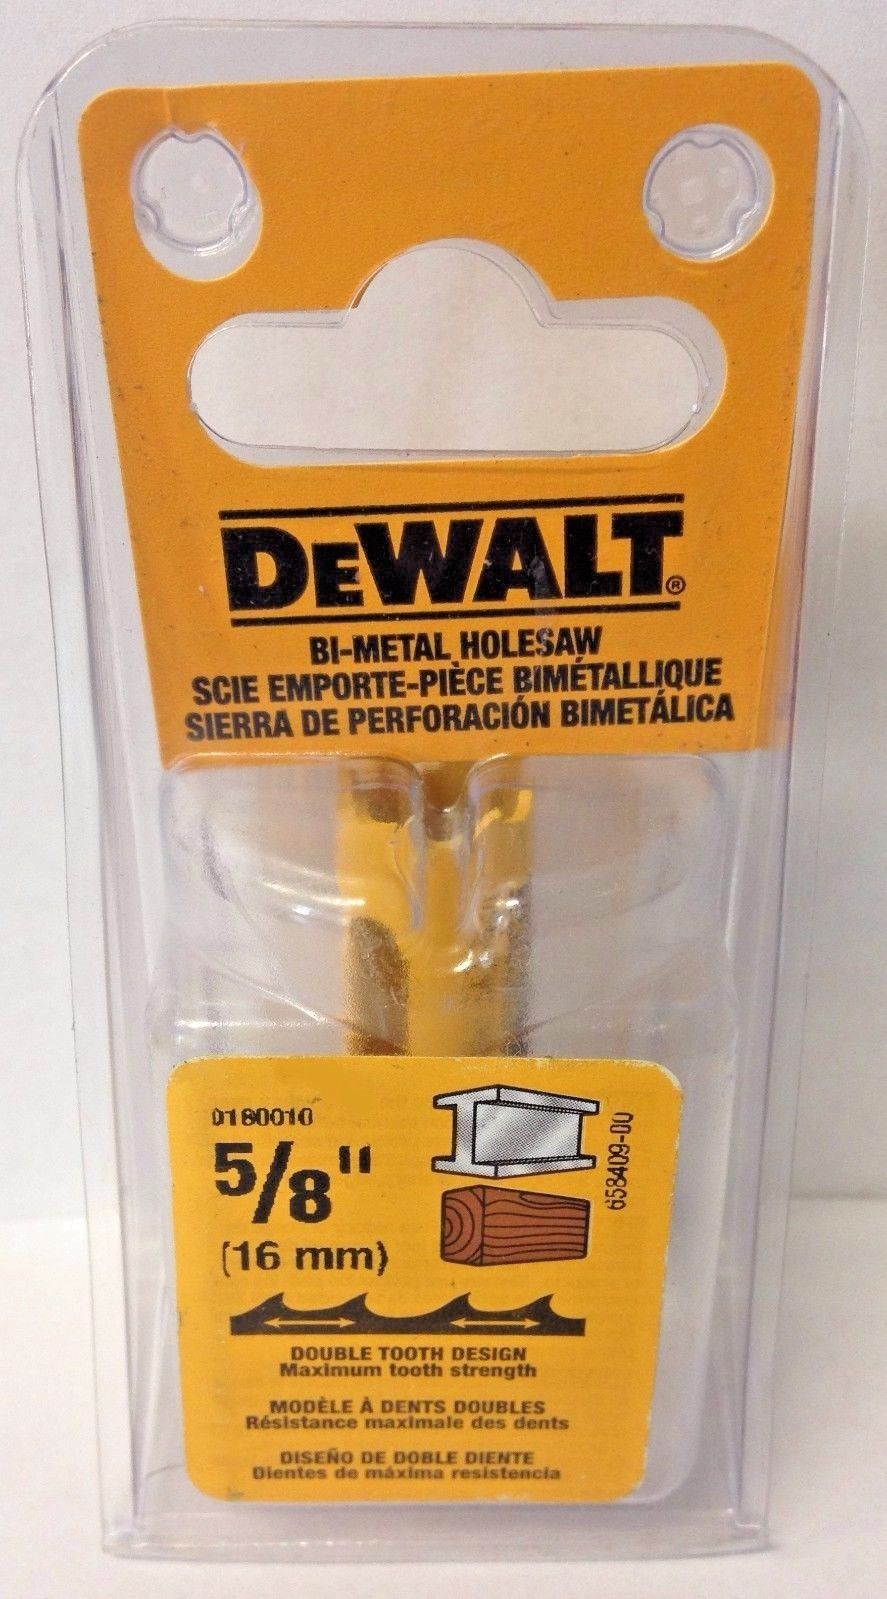 Dewalt D180010 5/8" Bi-Metal Hole Saw USA